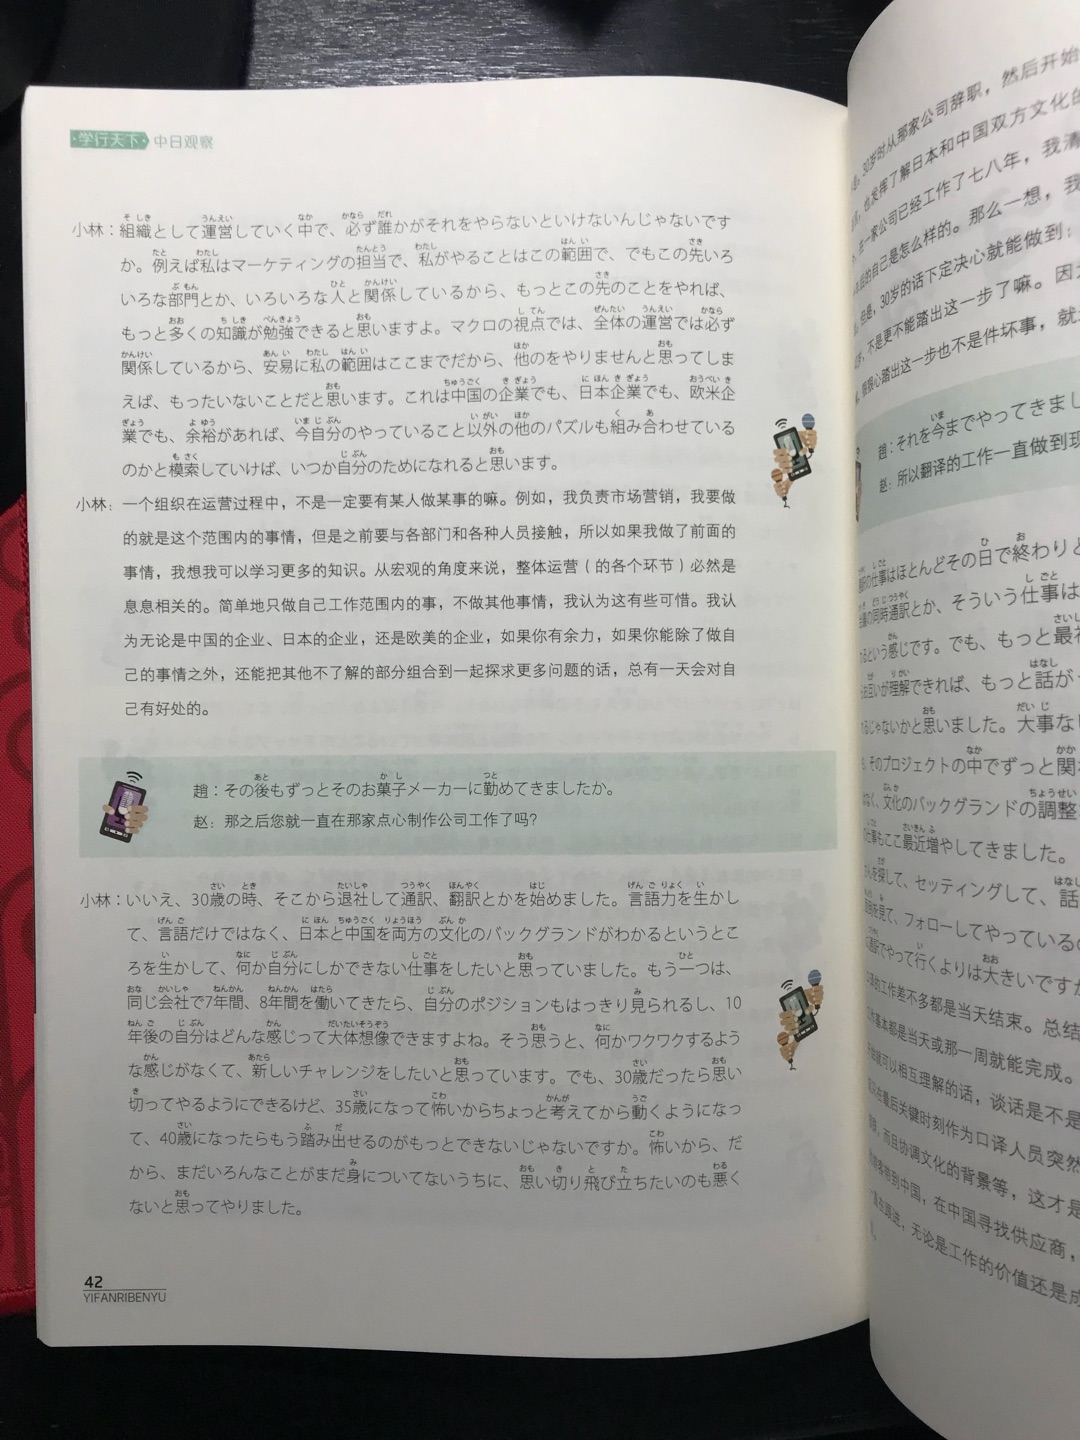 书不错，学日语必备，没有课本那么枯燥。有趣おもしろい